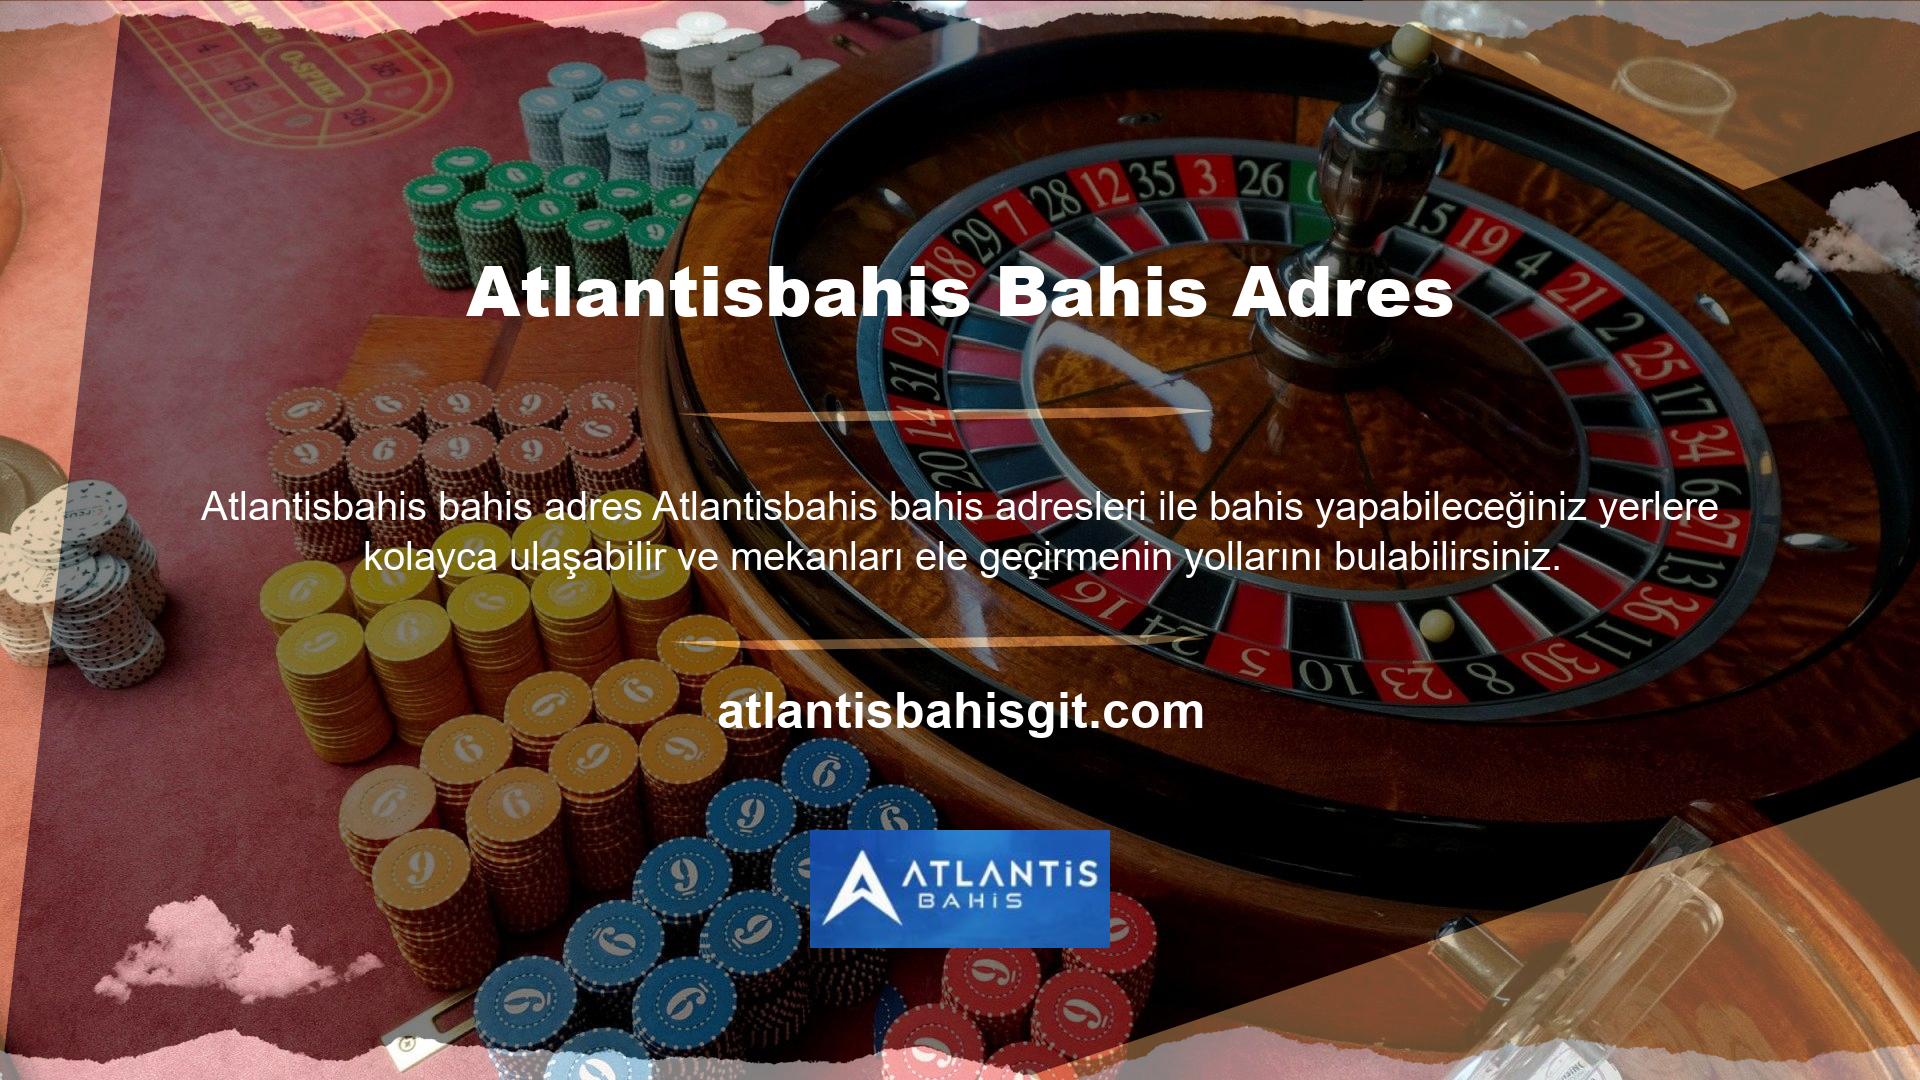 Atlantisbahis Bahis Adres